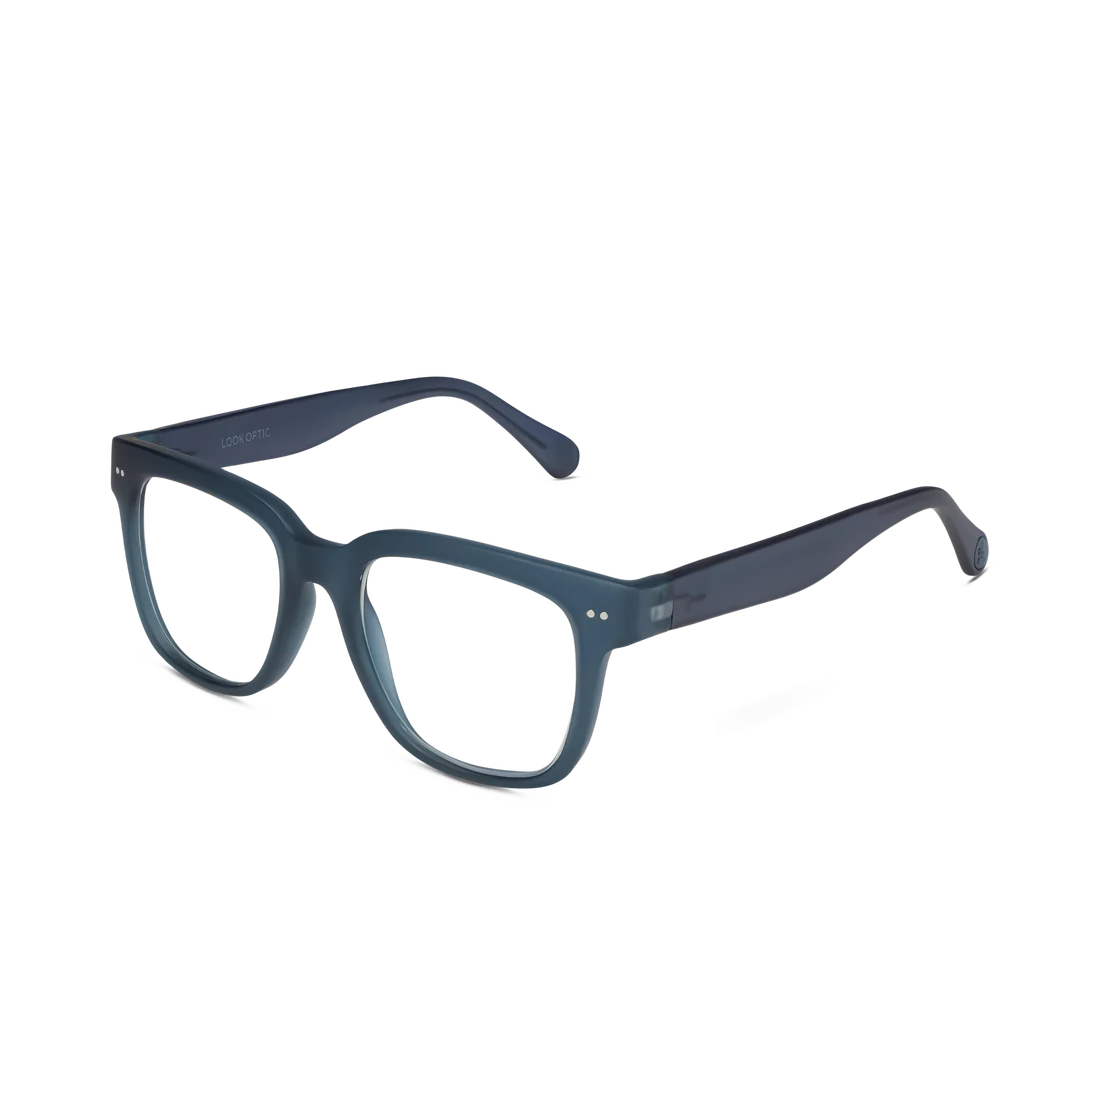 Laurel Eyeglasses - Navy